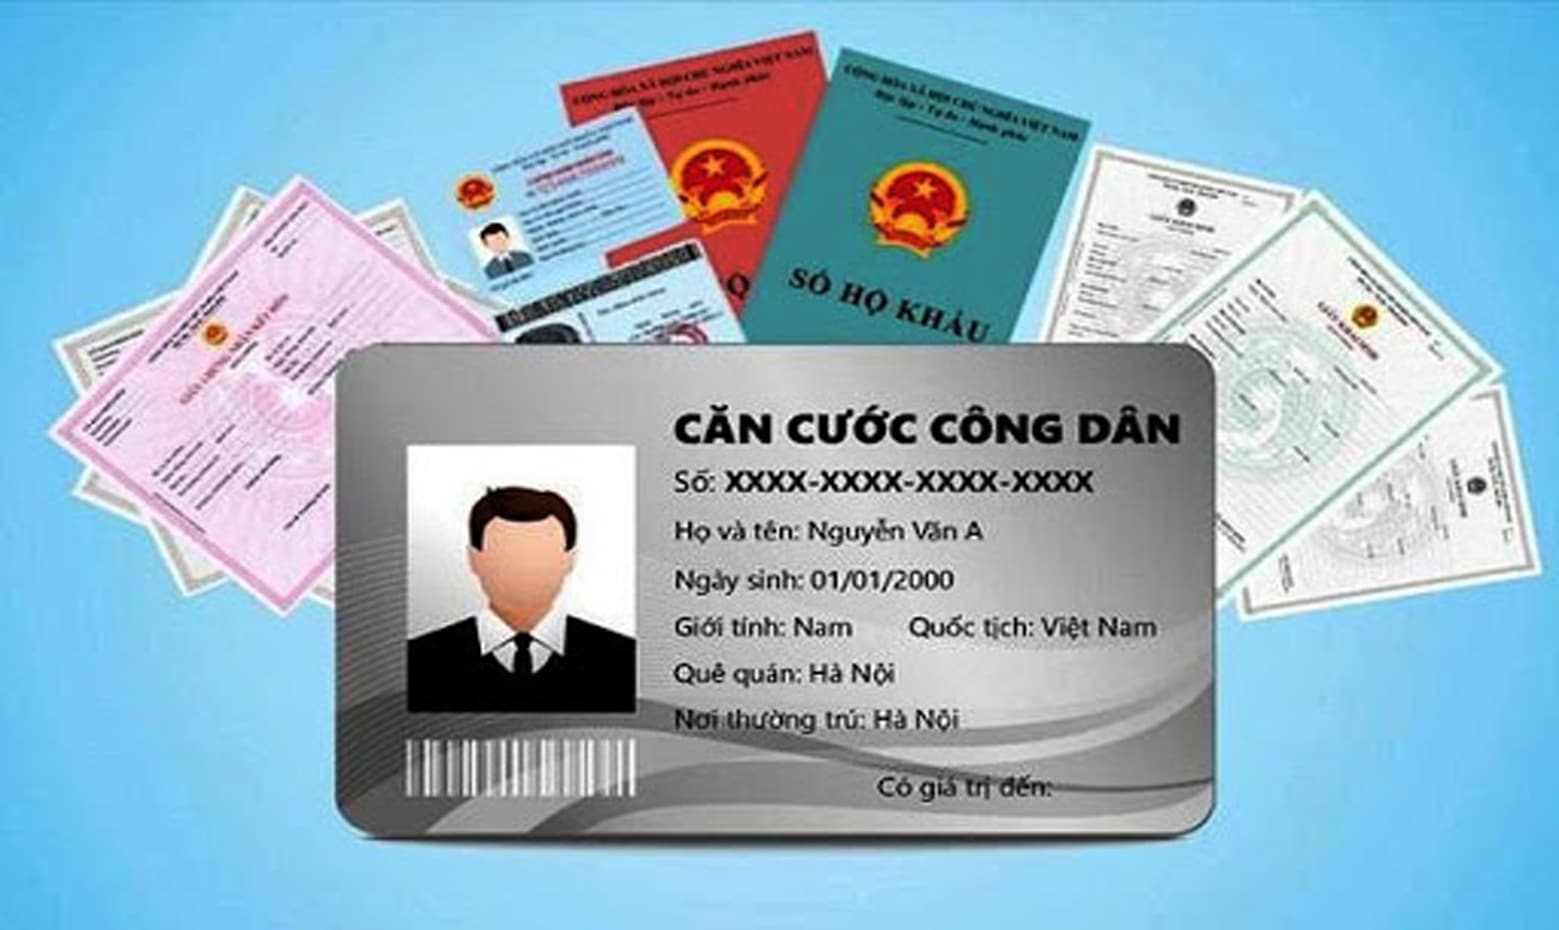 Hướng dẫn cách làm căn cước công dân online tại Hà Nội